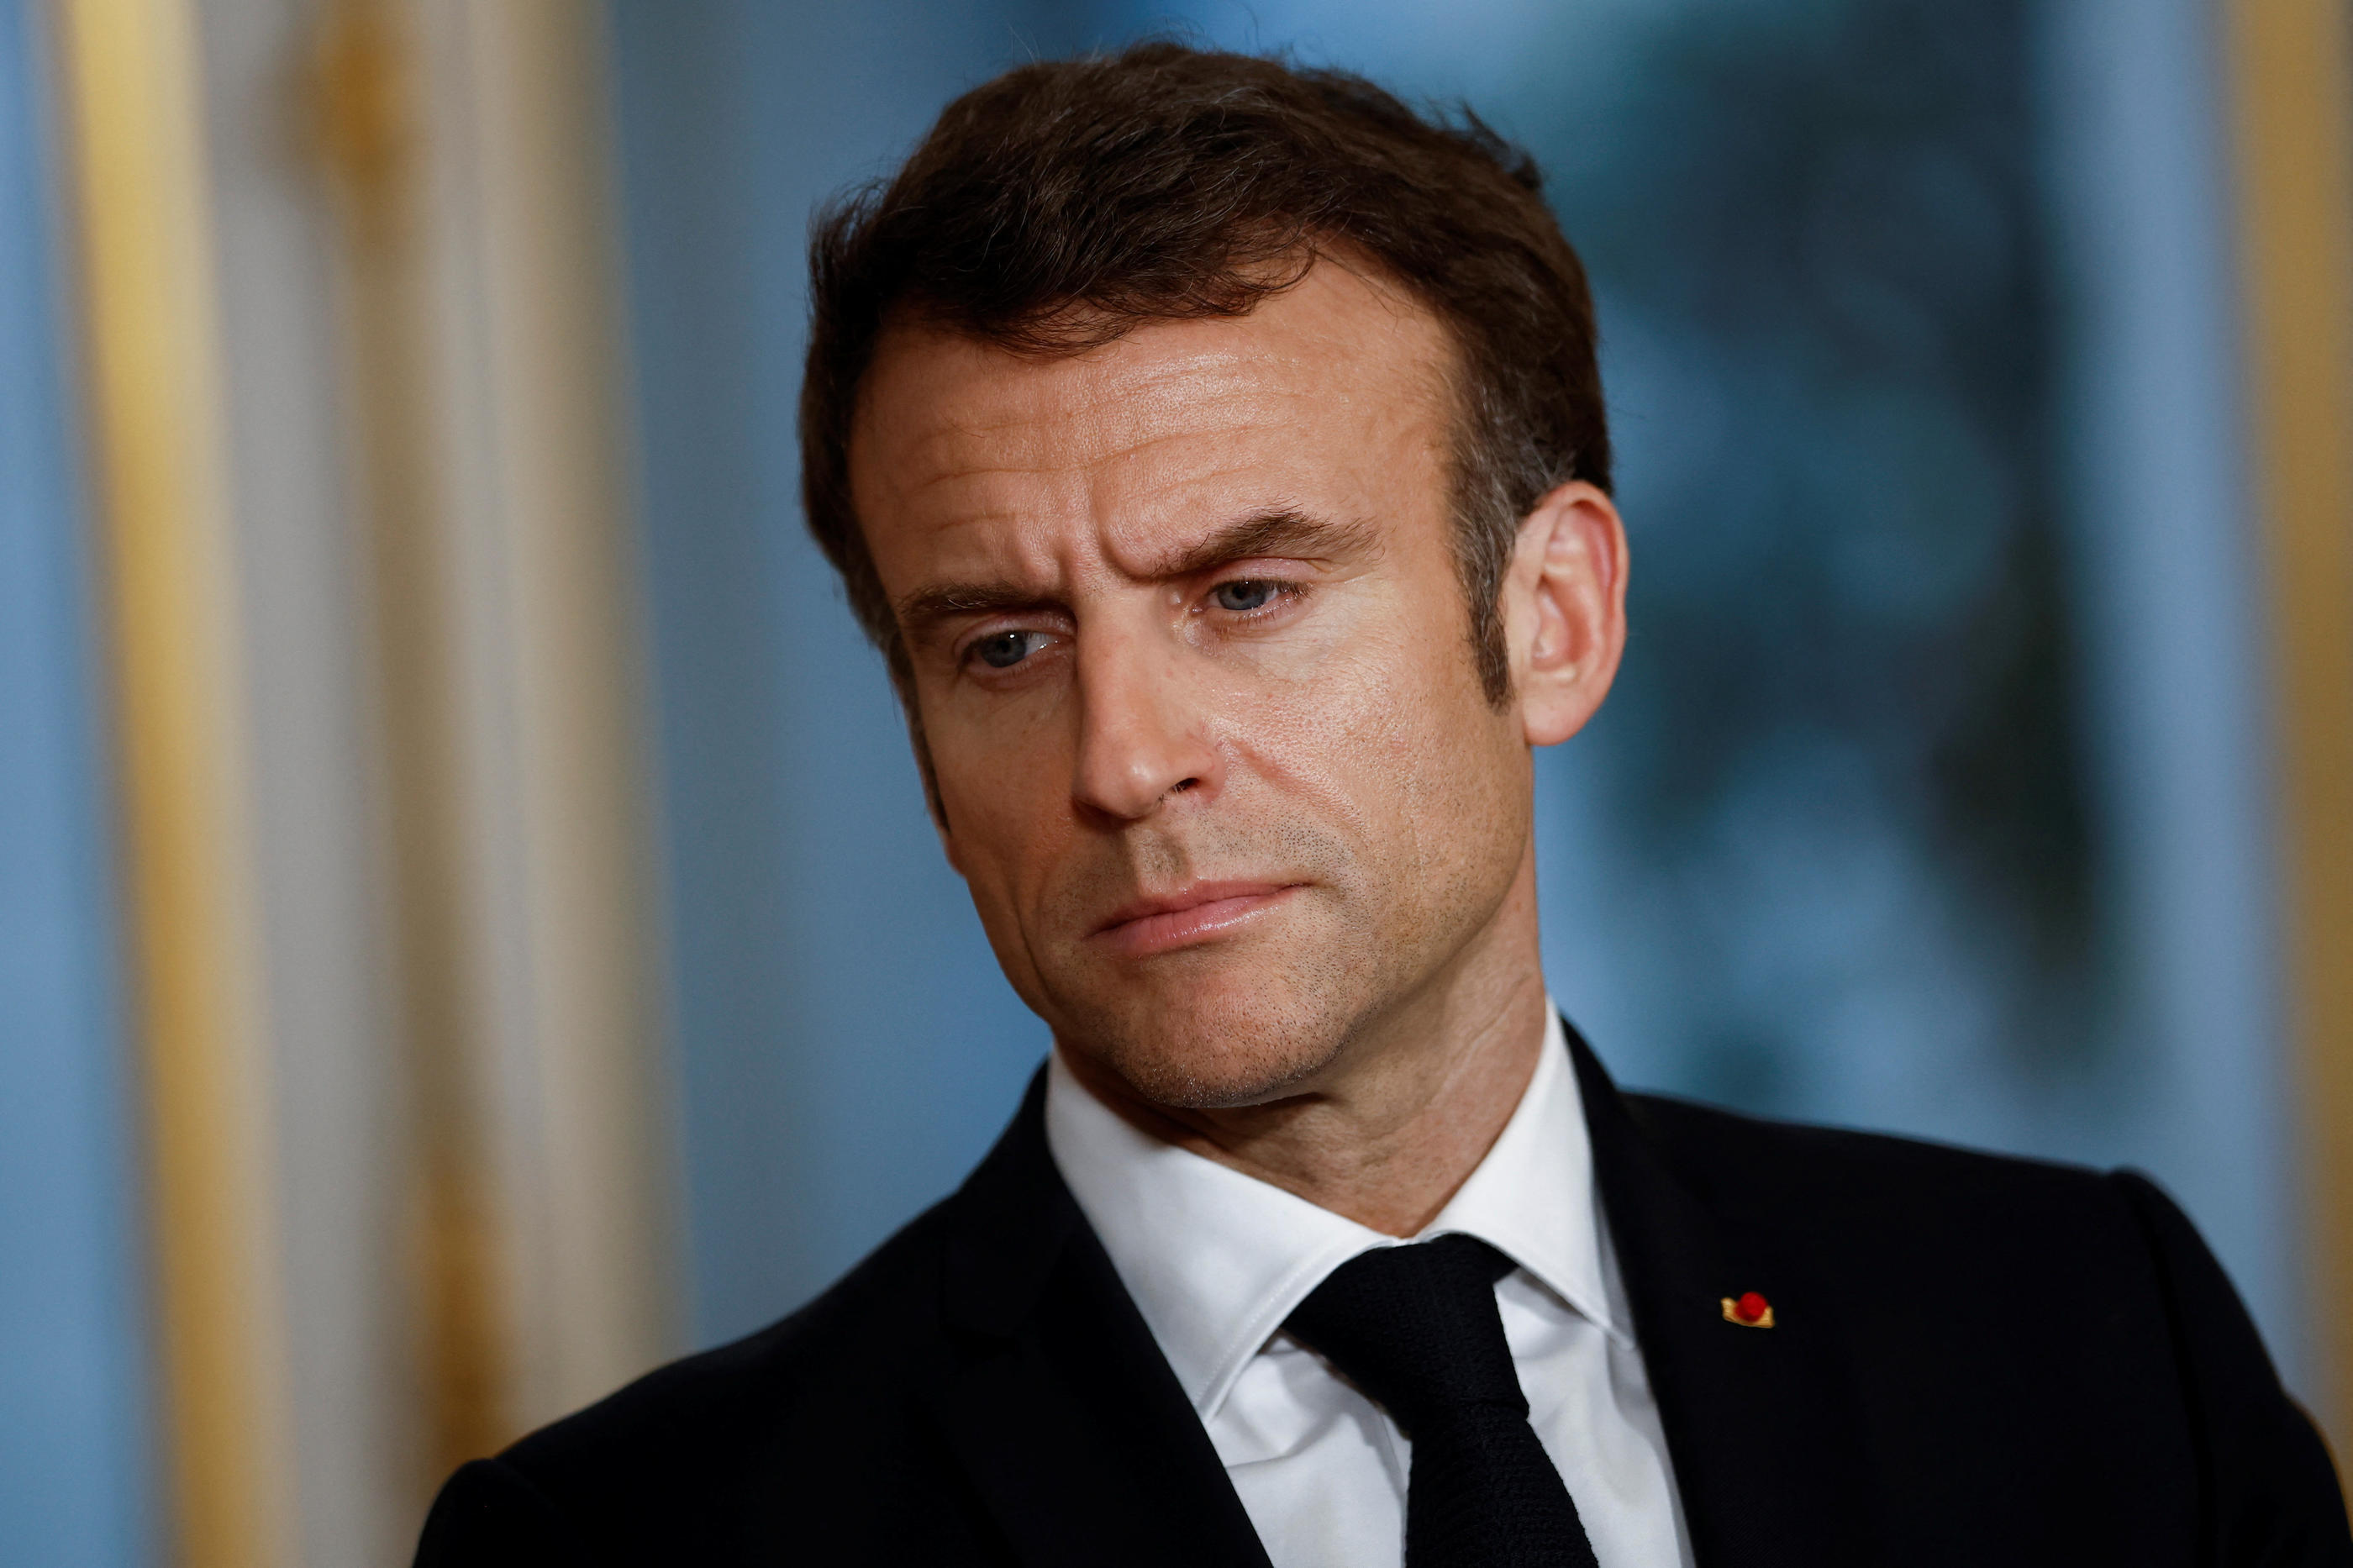 Bien décidé à sortir de l'impopulaire séquence des retraites, Emmanuel Macron compte lancer de nouvelles réformes. Mais certains, au sein même de son camp, le mettent en garde de ne pas aller trop vite. Reuters/Yoan Valat